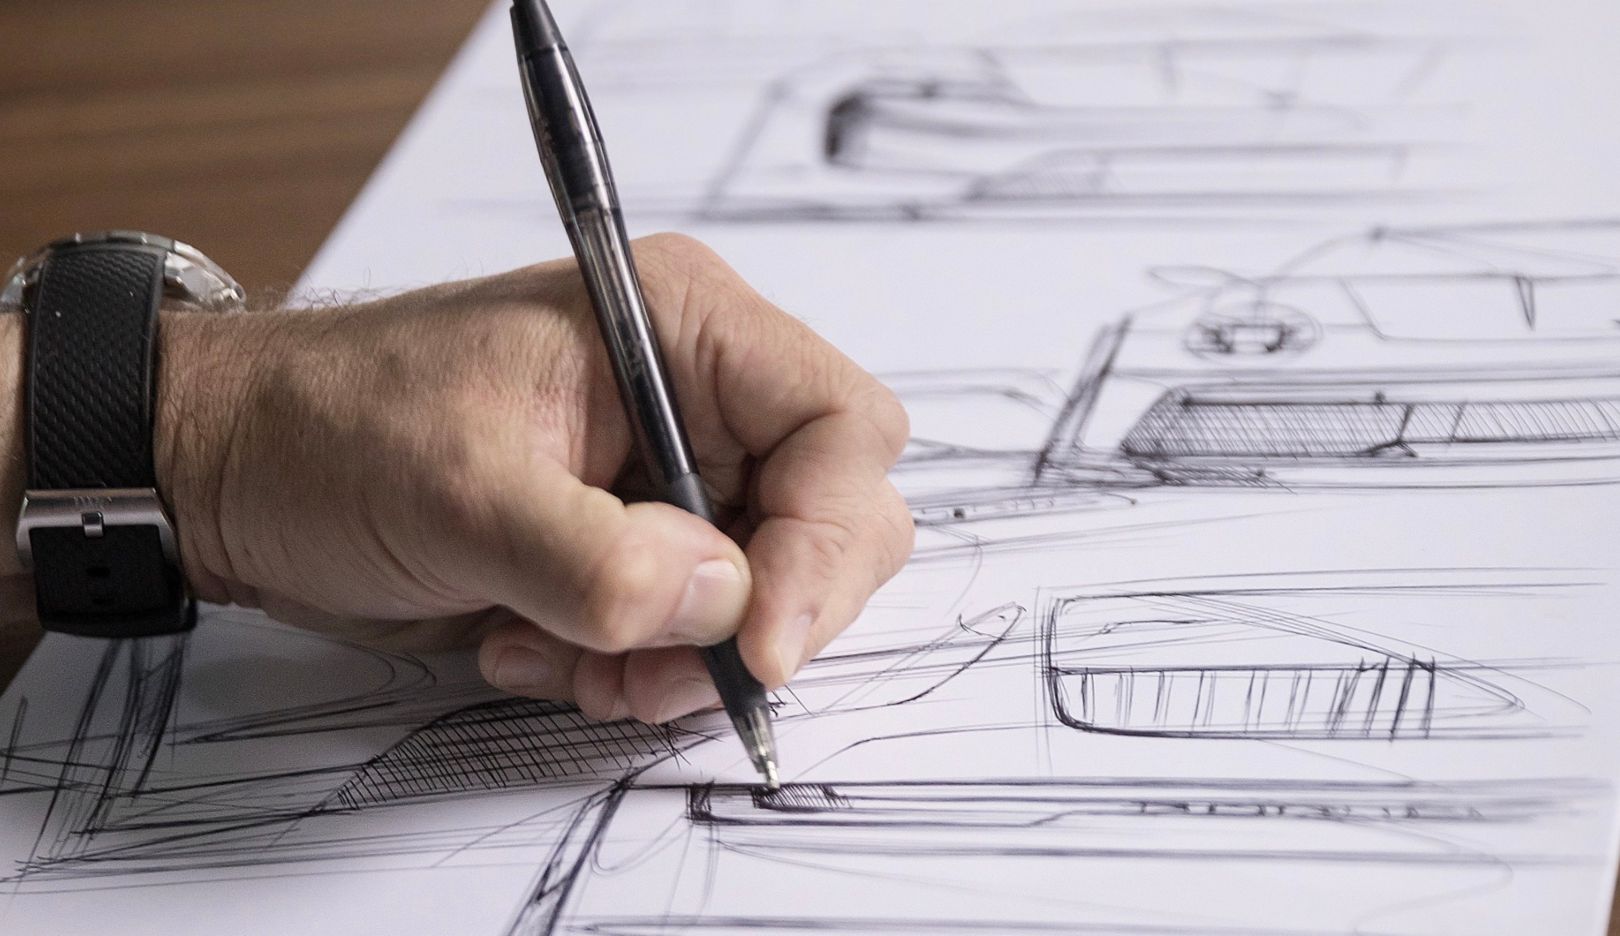 Car Design Culture - Second generation Porsche Panamera interior design  sketch (via https://bit.ly/37x1eLs) | Facebook